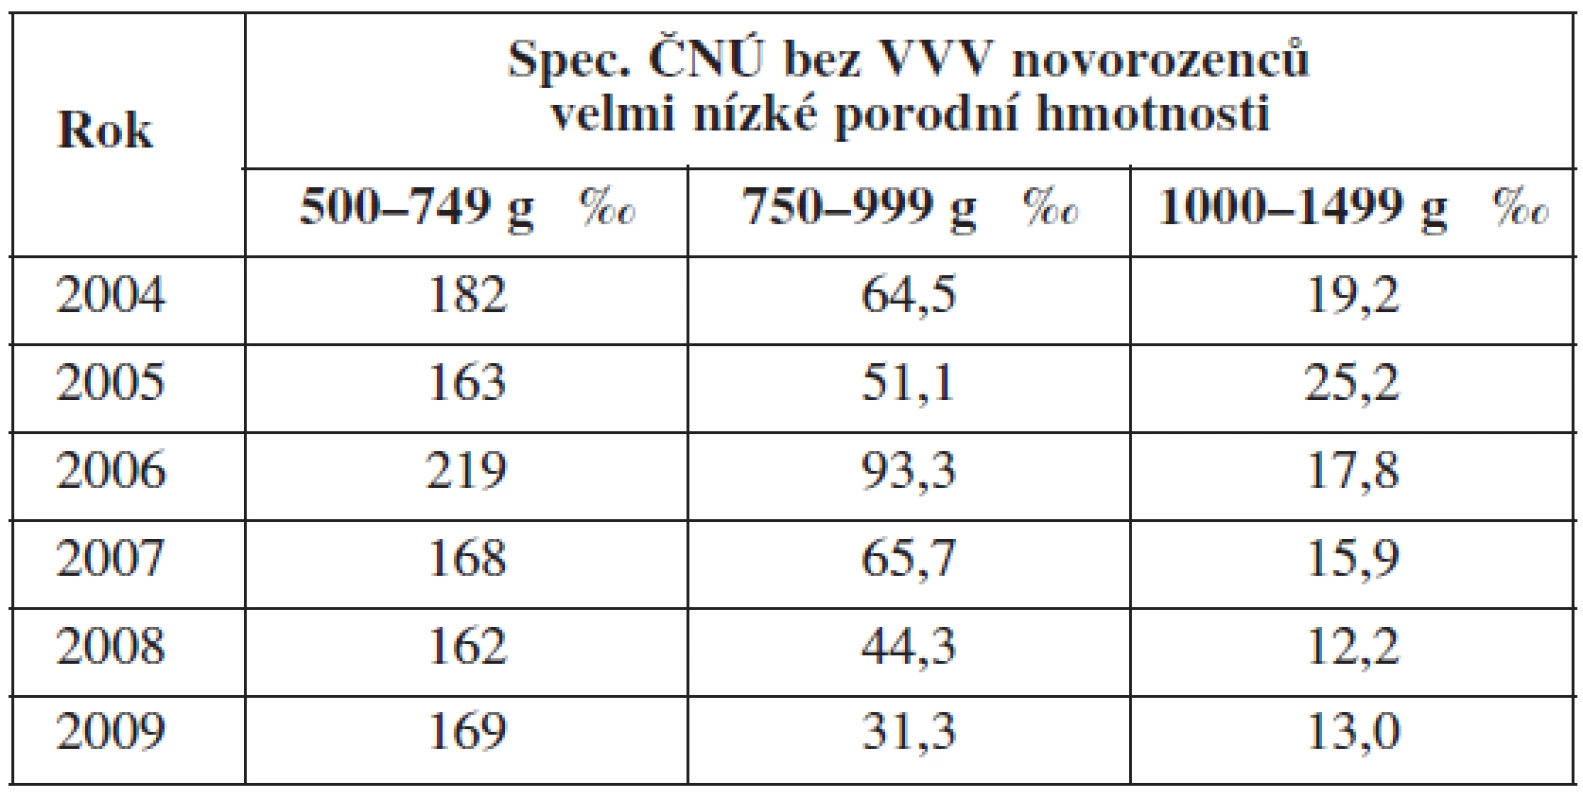 Spec. časná novorozenecká úmrtnost bez VVV novorozenců s hmotností méně než 1500 g v letech 2004–2009